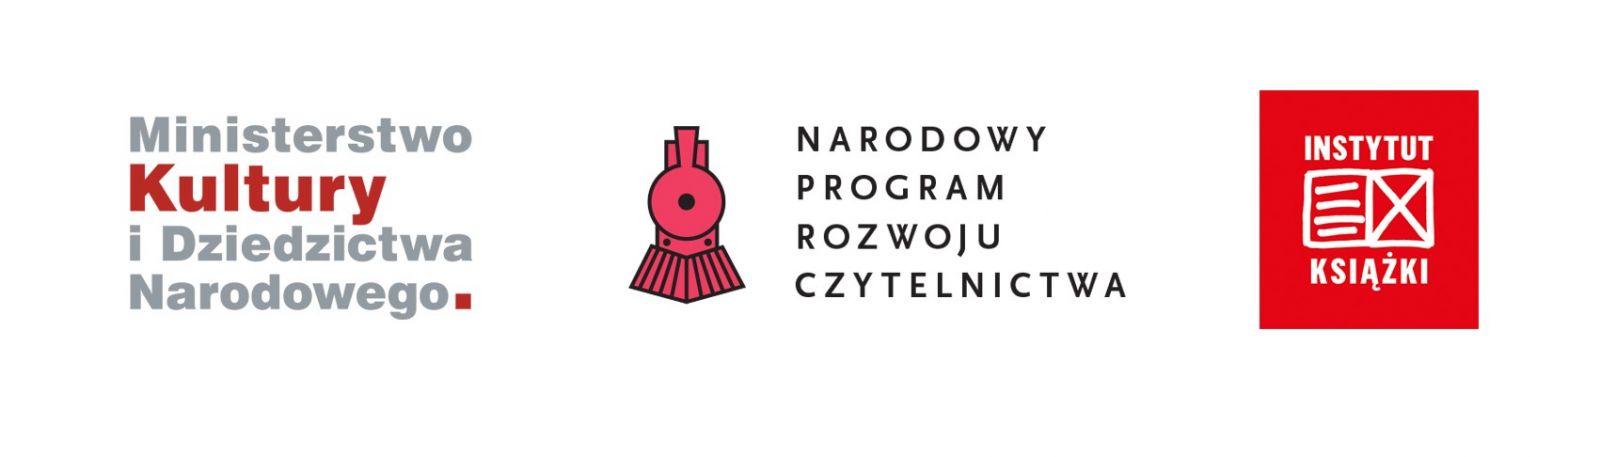 Logo Ministerstwo Kultury i Dziedzictwa Narodowego, logo Narodowy Program Rozwoju Czytelnictwa, logo Instytut Książki.